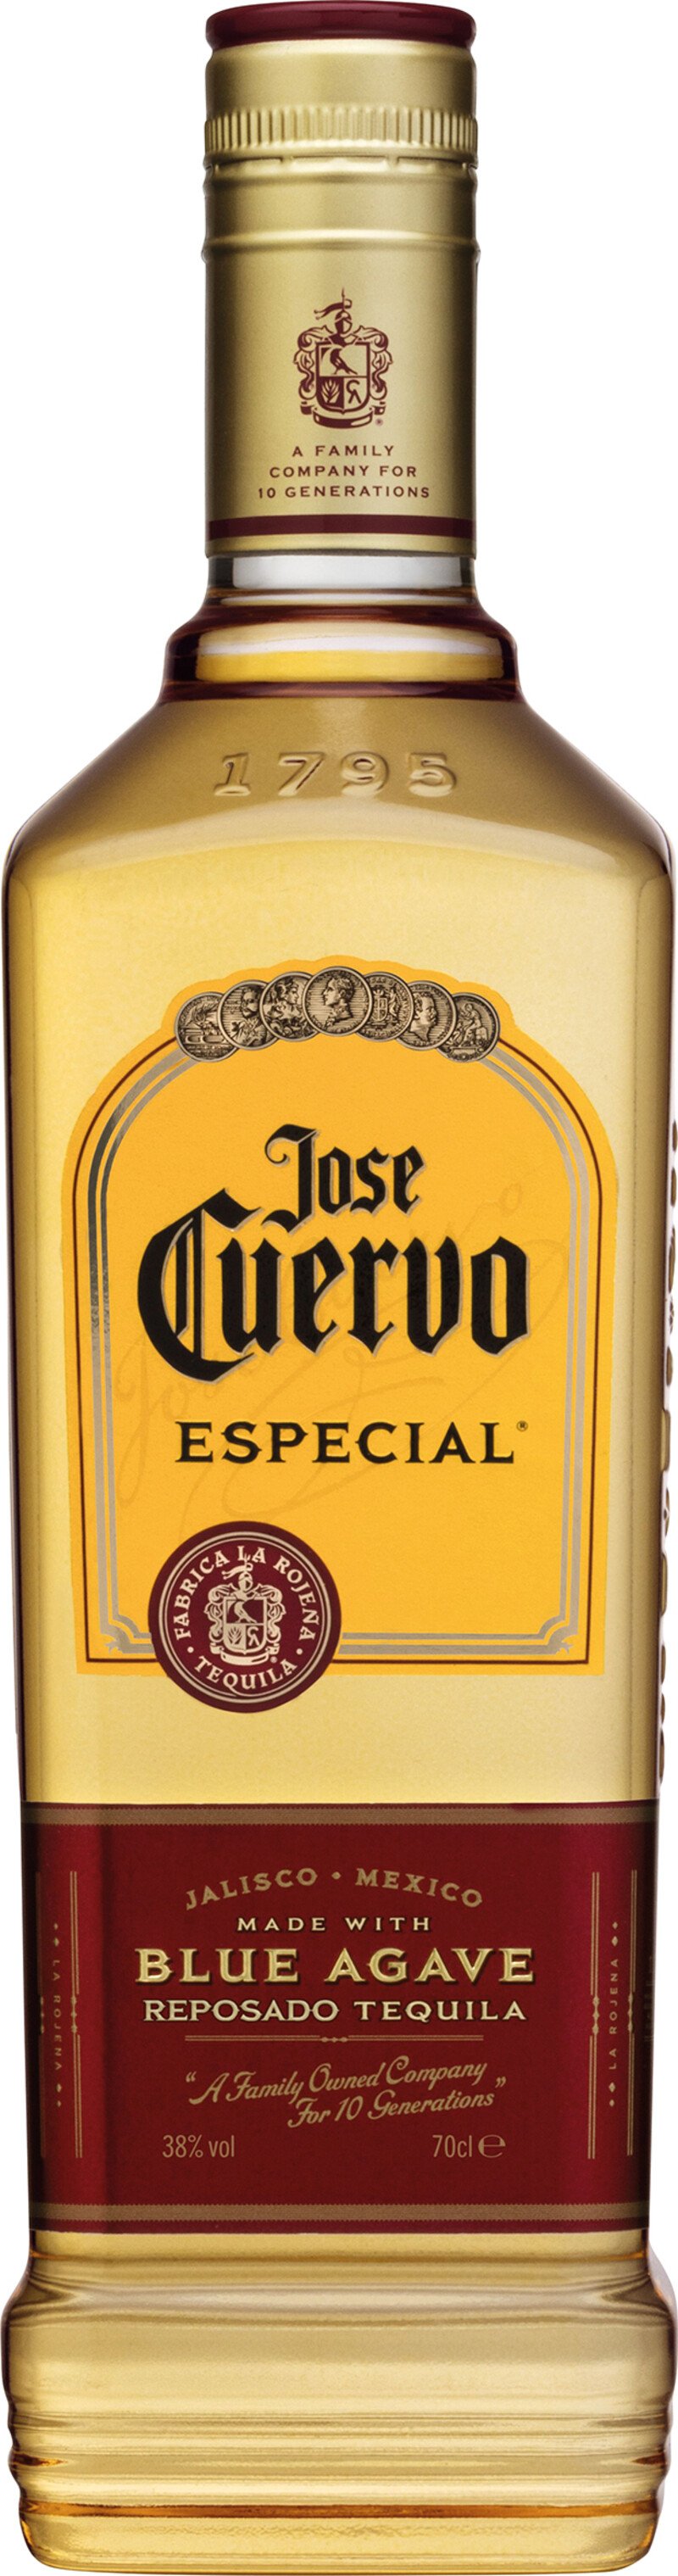 Jose Cuervo Especial Tequila Reposado 38% Fl. (0,7 Lt.)